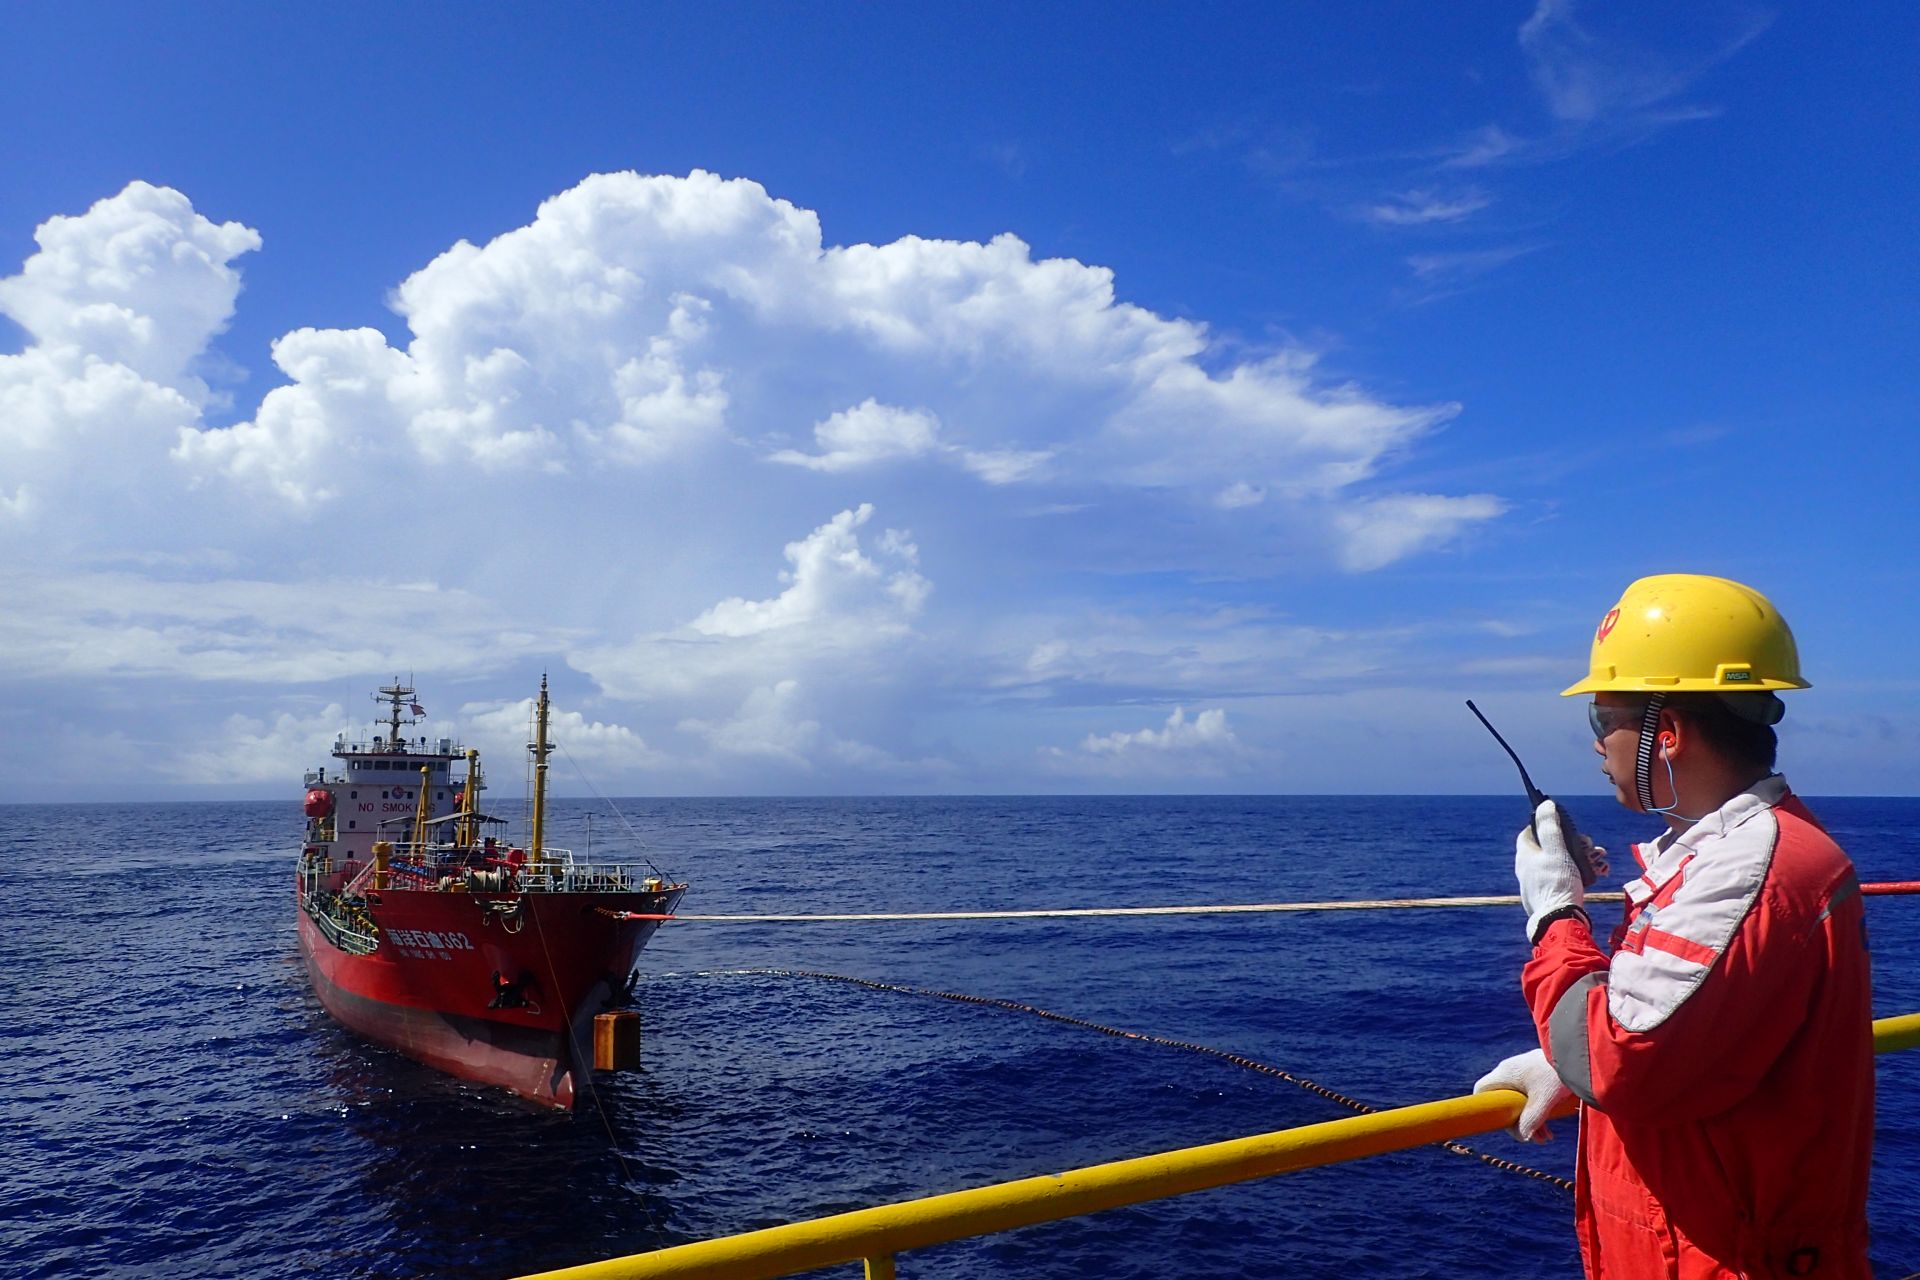 中海油湛江分公司高效完成液化石油氣外輸作業